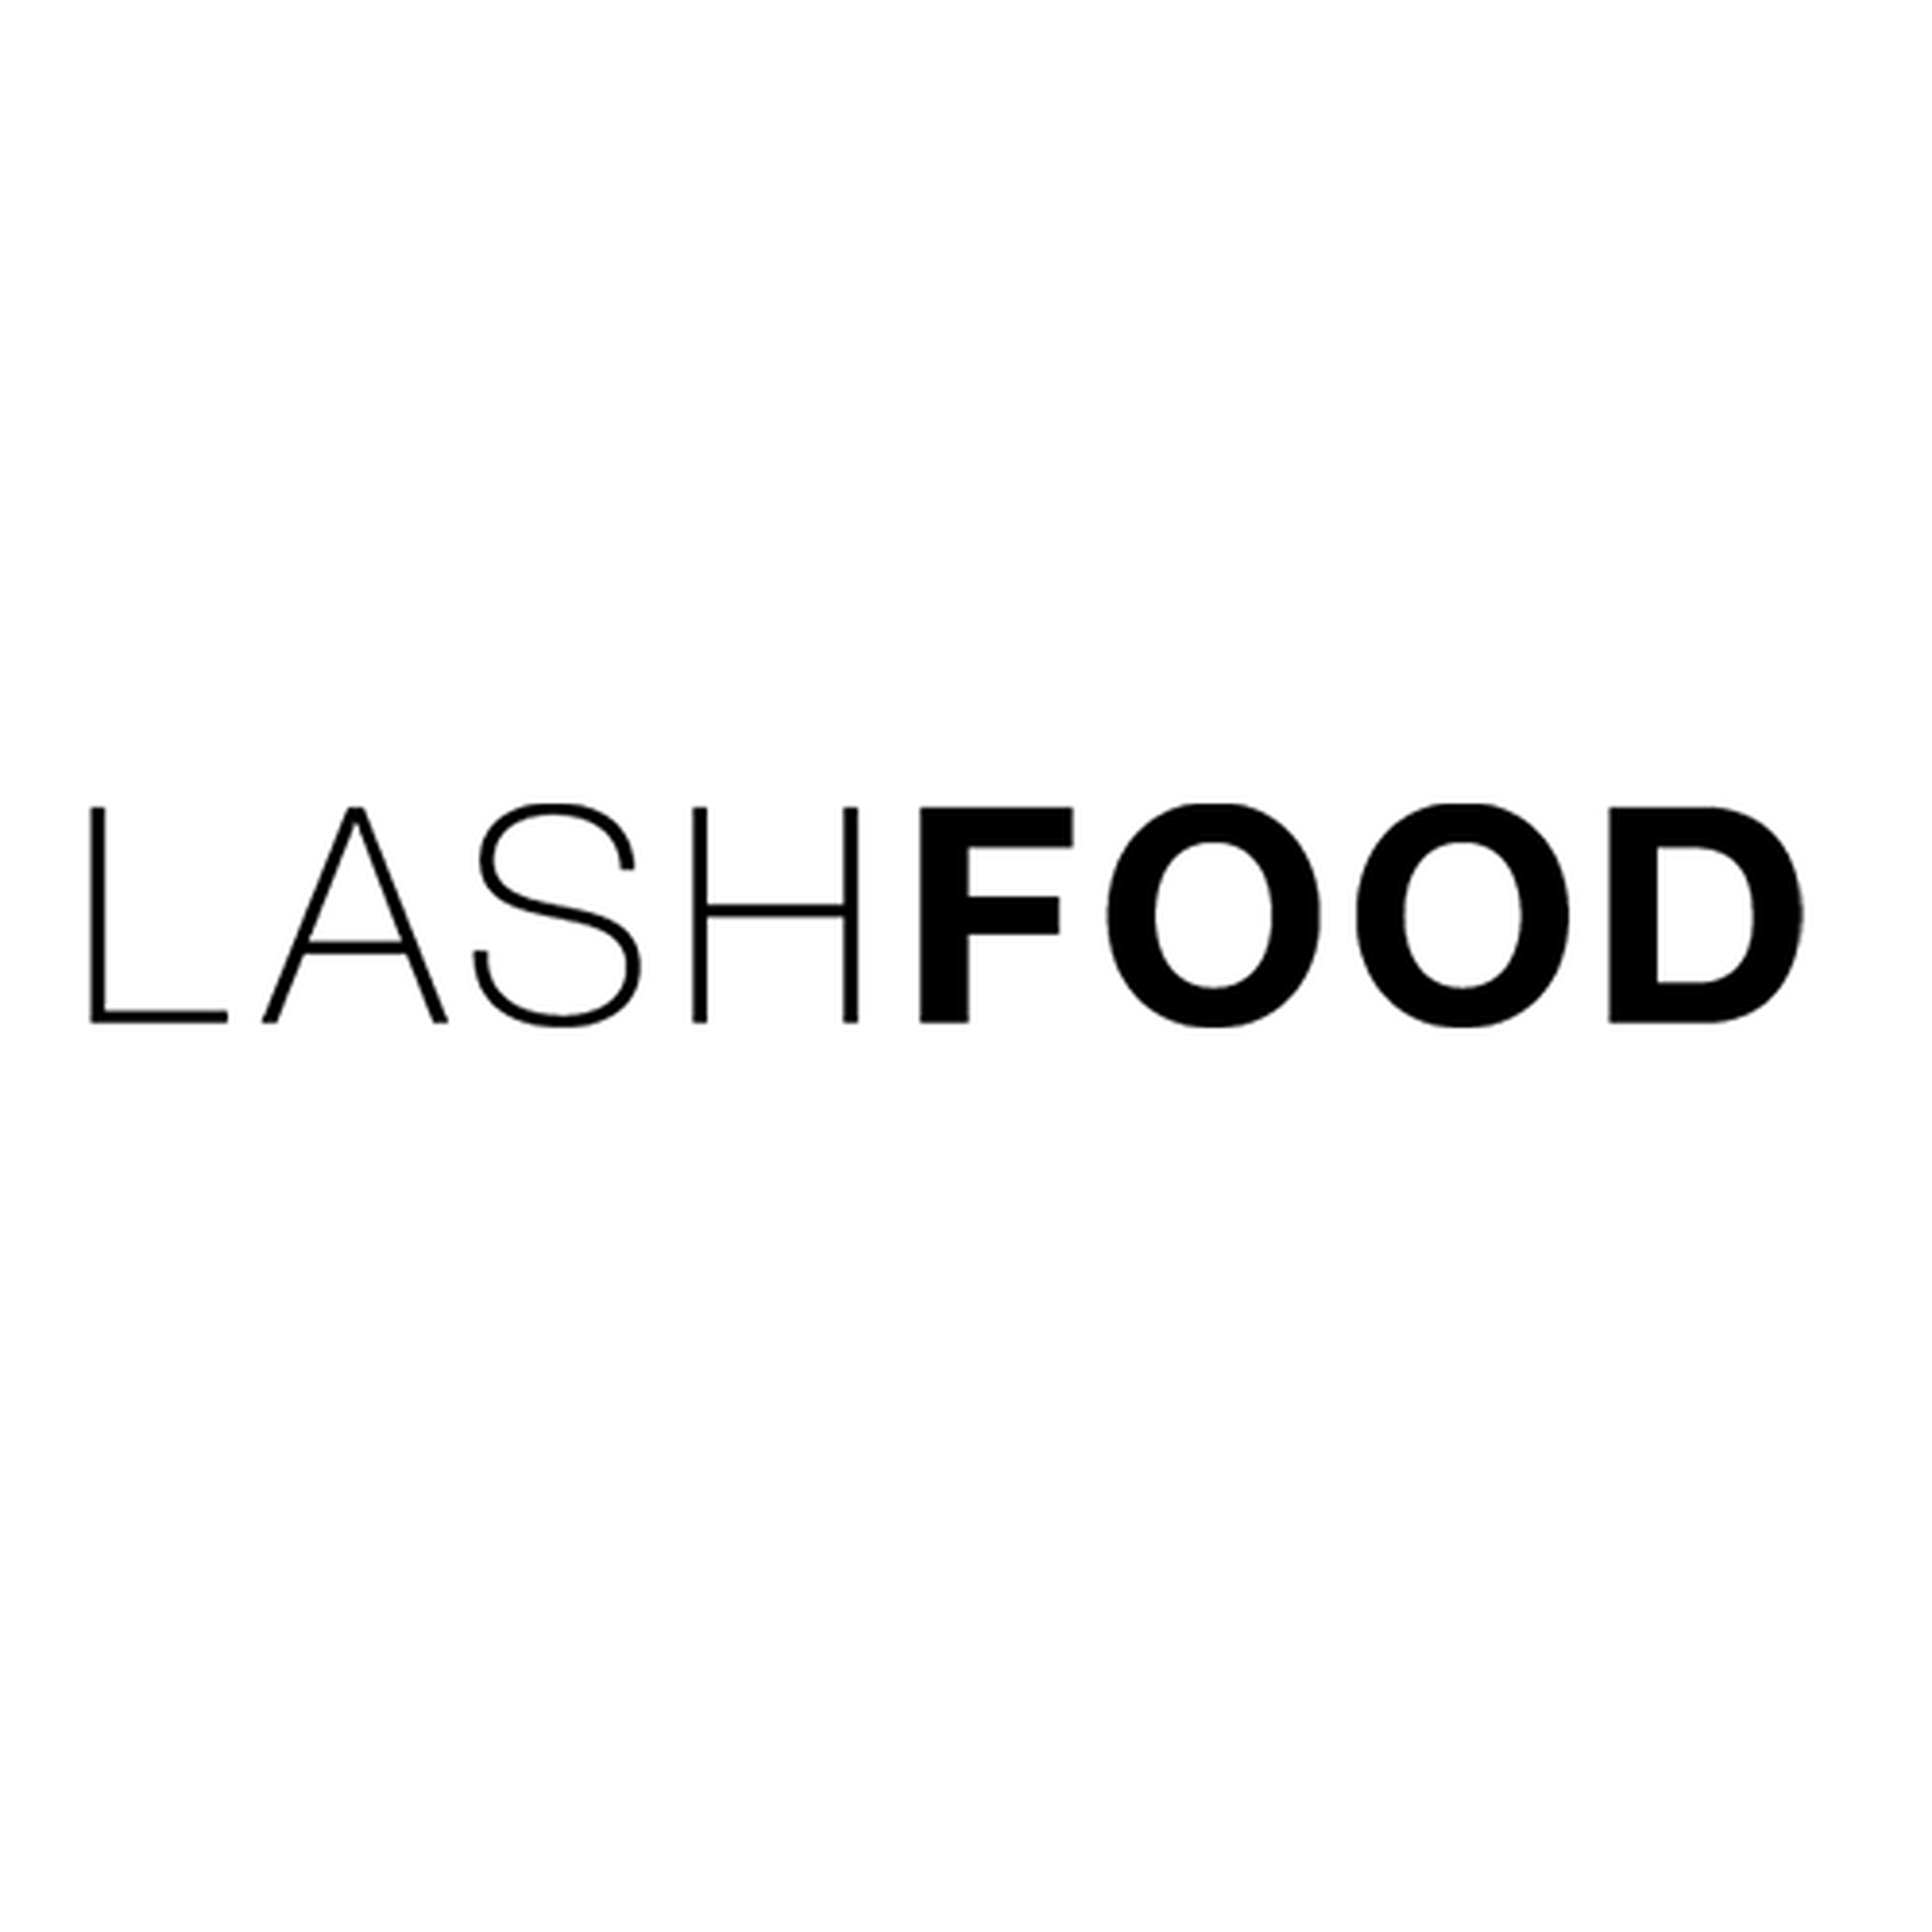 Lashfood logotype